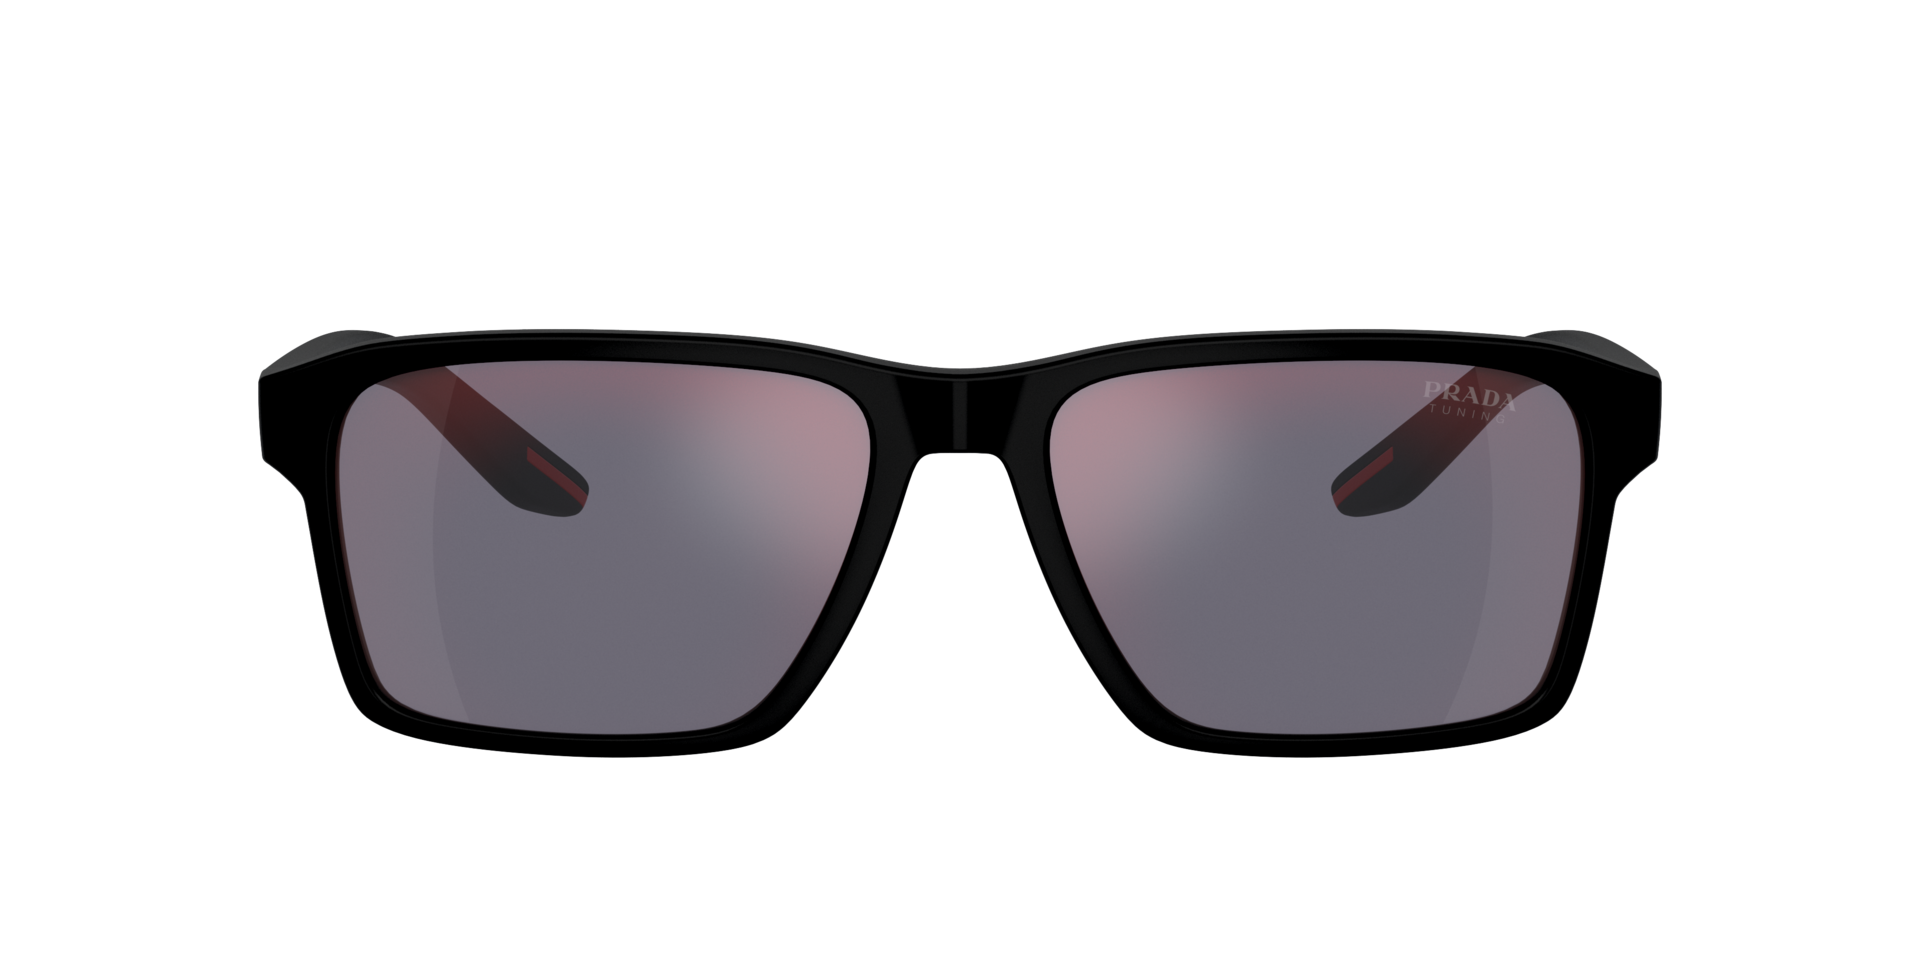 Das Bild zeigt die Sonnenbrille PS05YS 1BO10A von der Marke Prada Linea Rossa in schwarz.